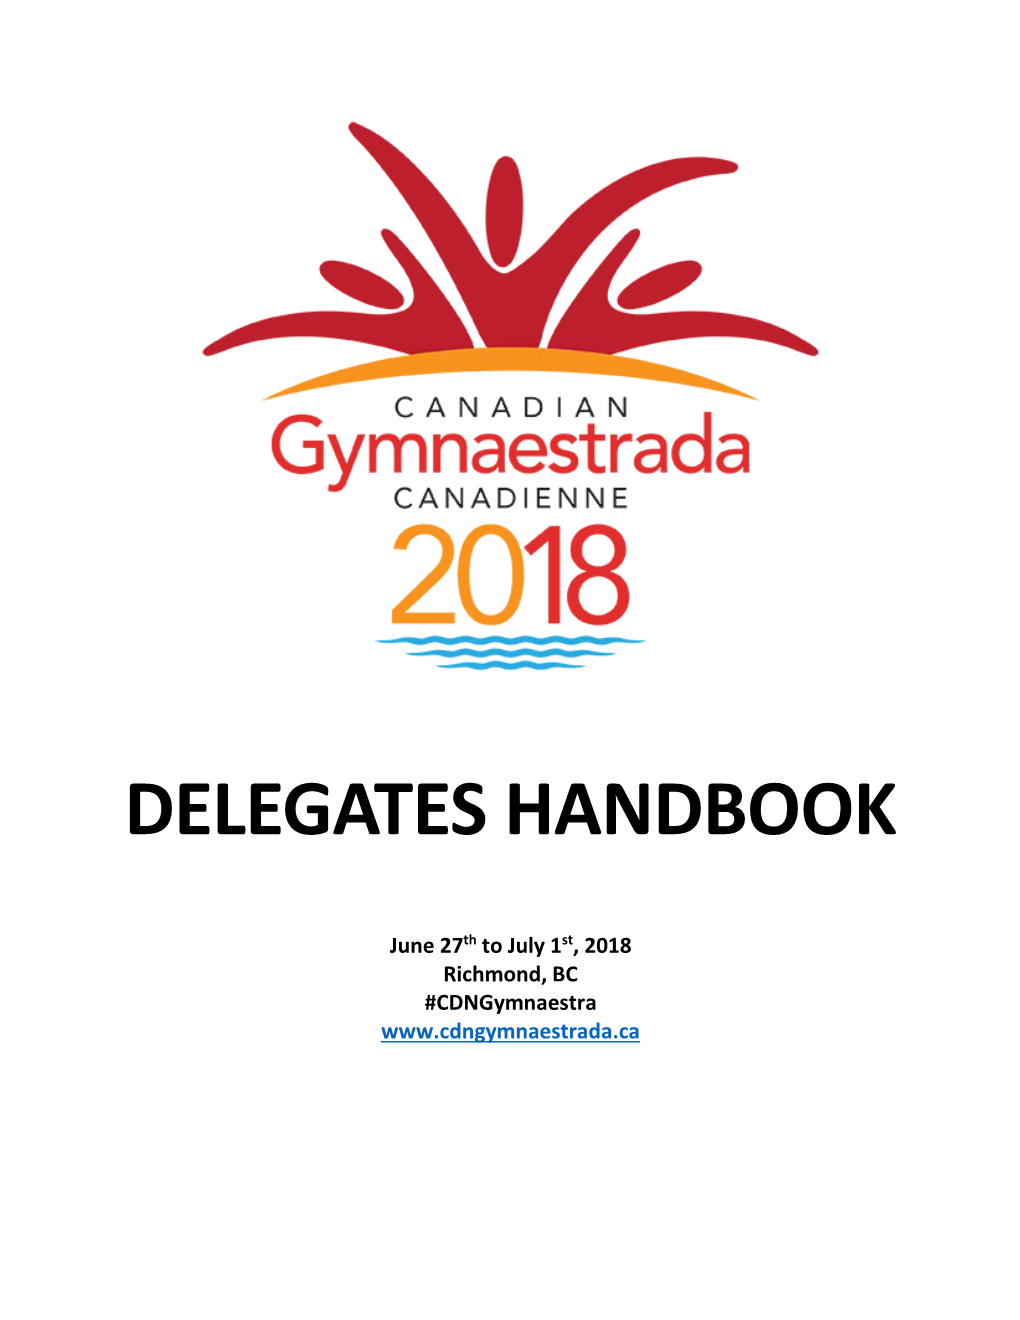 Delegates Handbook